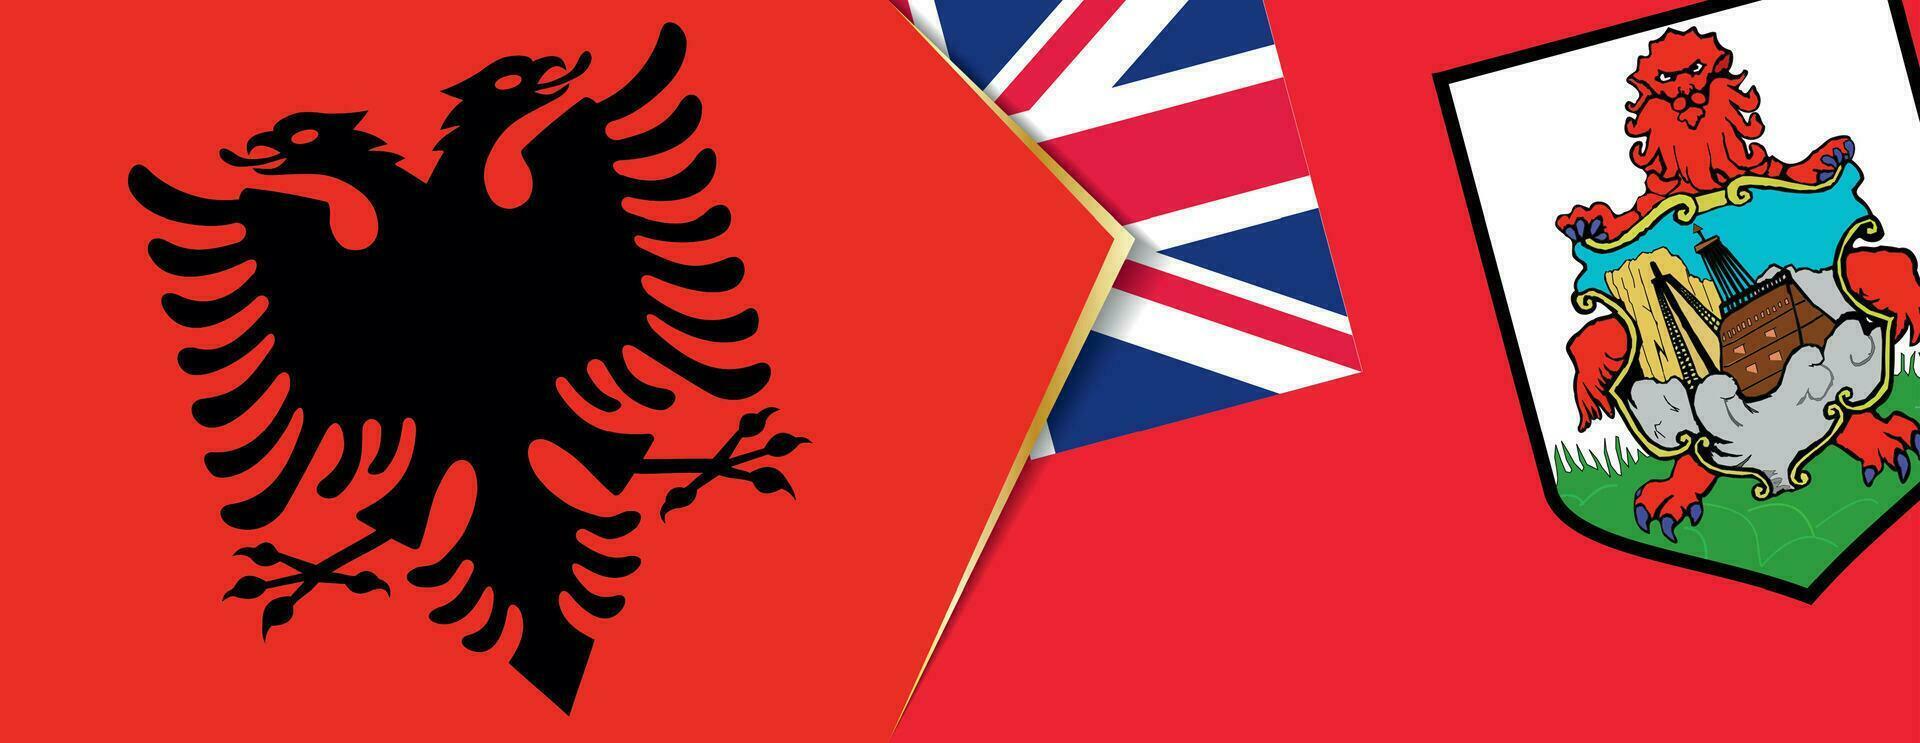 Albania e bermuda bandiere, Due vettore bandiere.